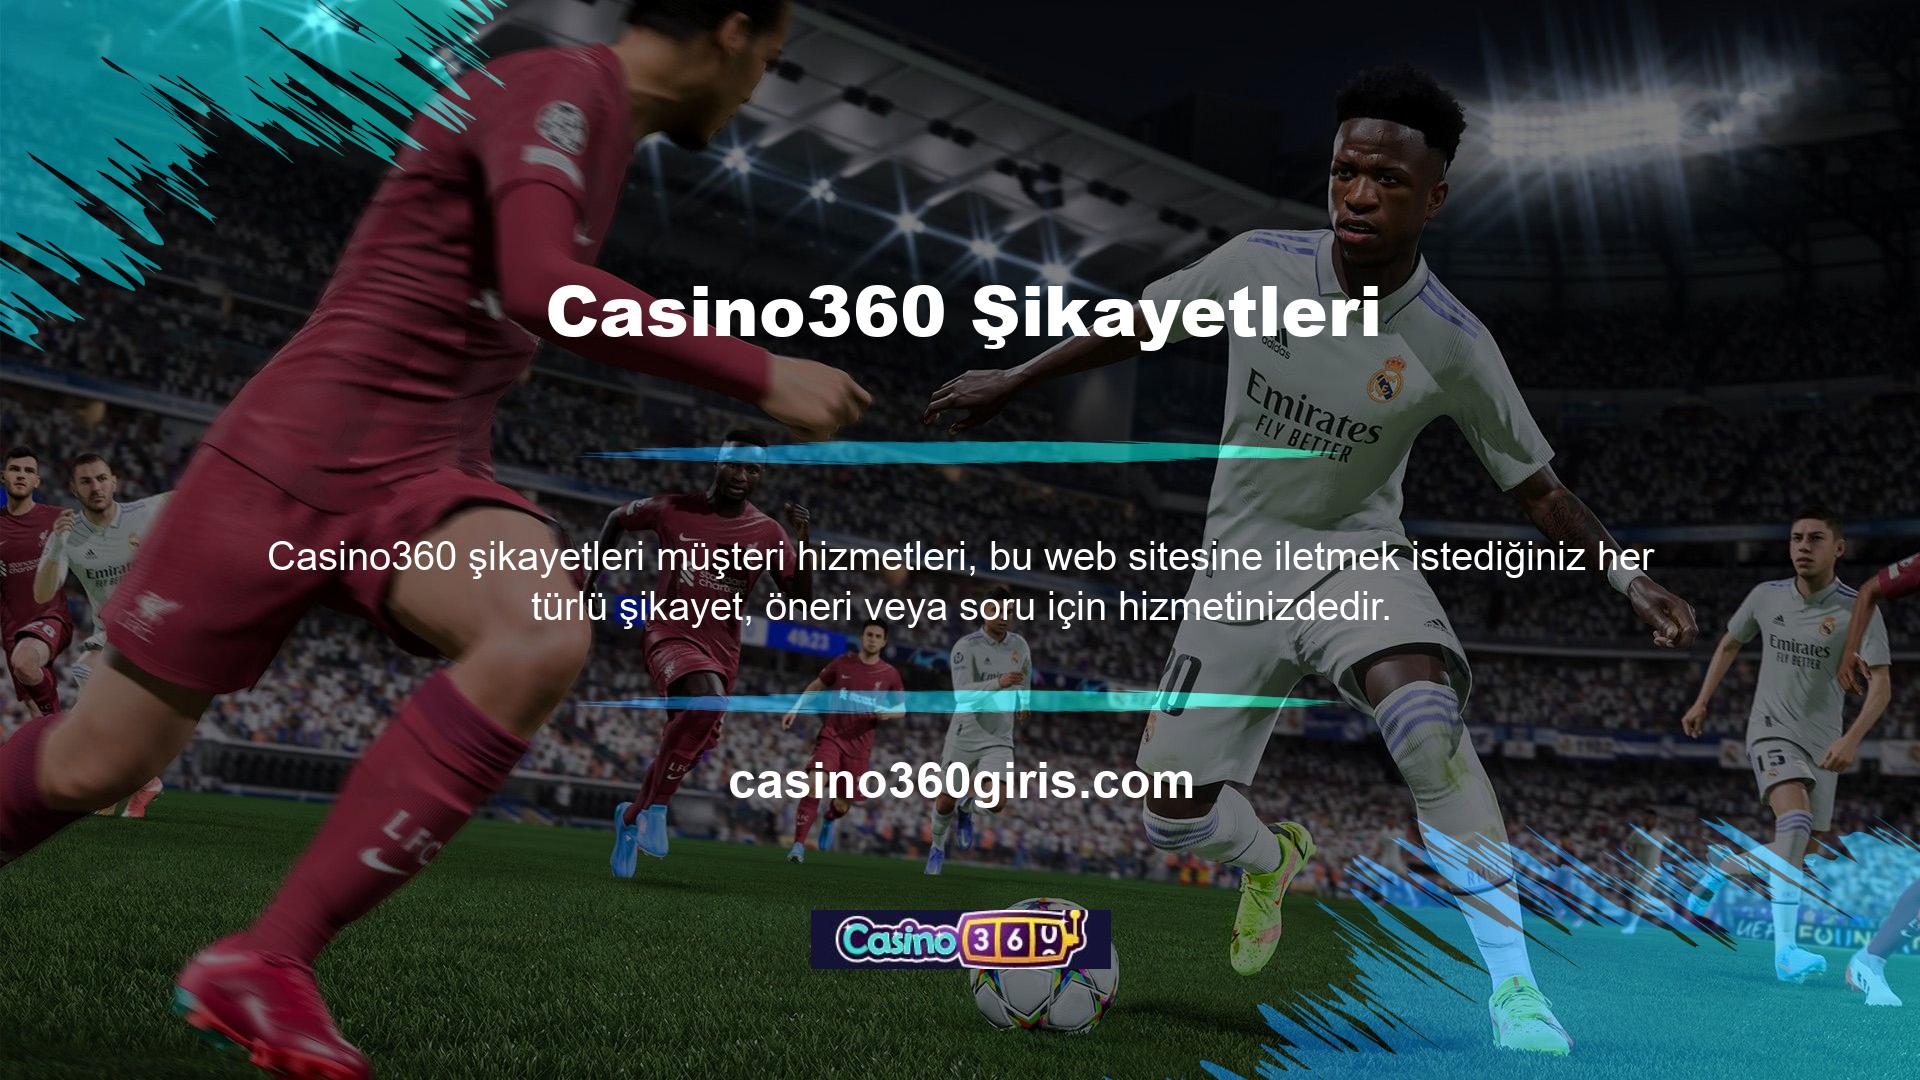 Çevrimiçi yardım hattı, Casino360 şikayetleri şikayetler için ilk irtibat noktasıdır